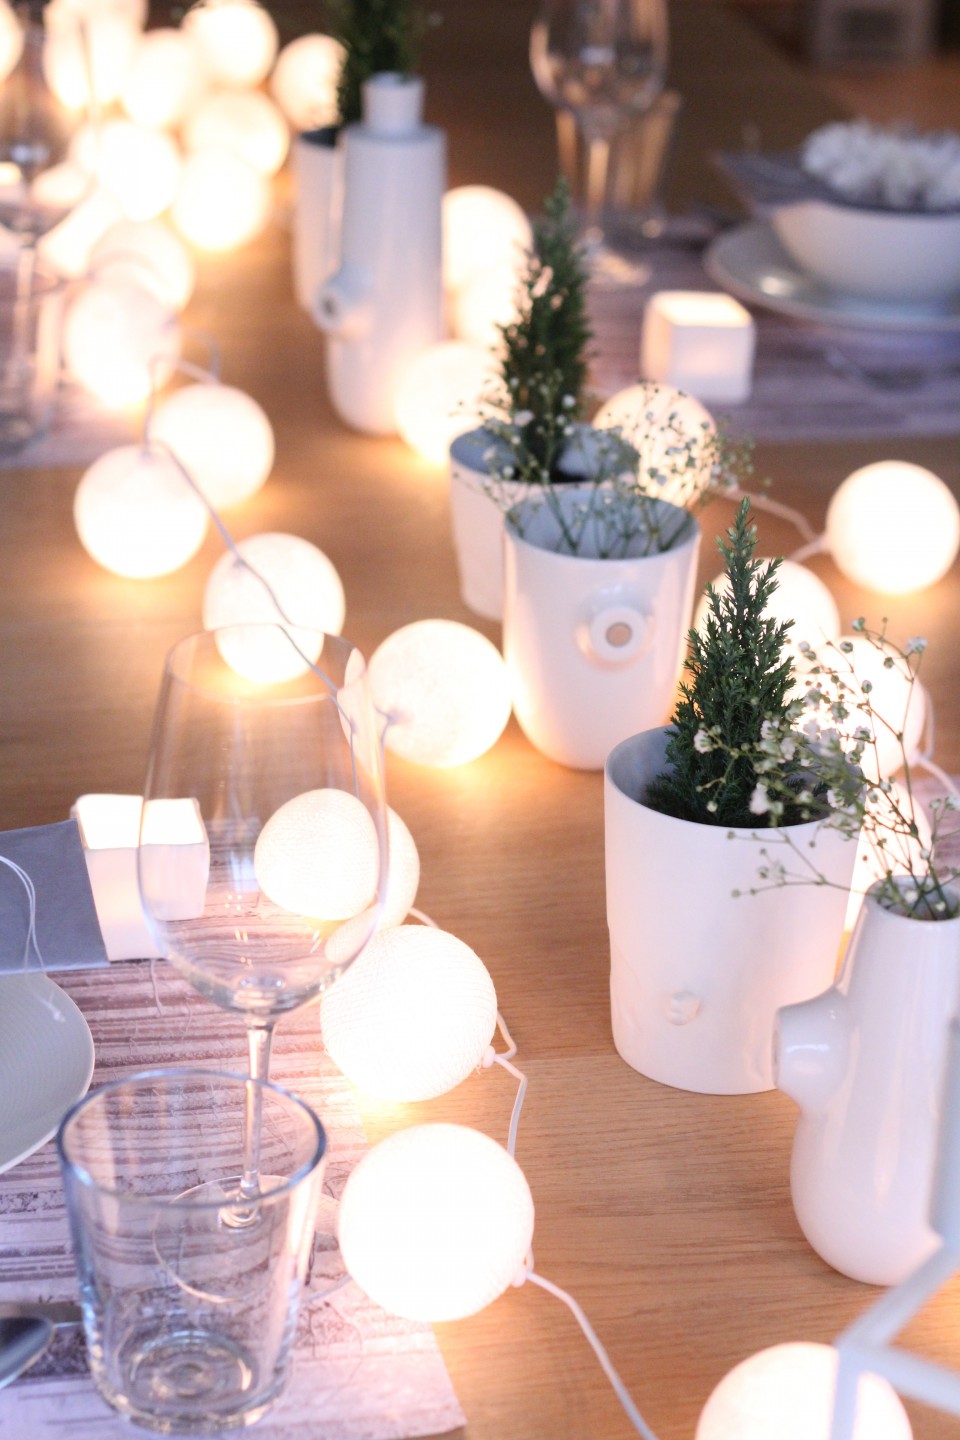 Lights on Christmas table